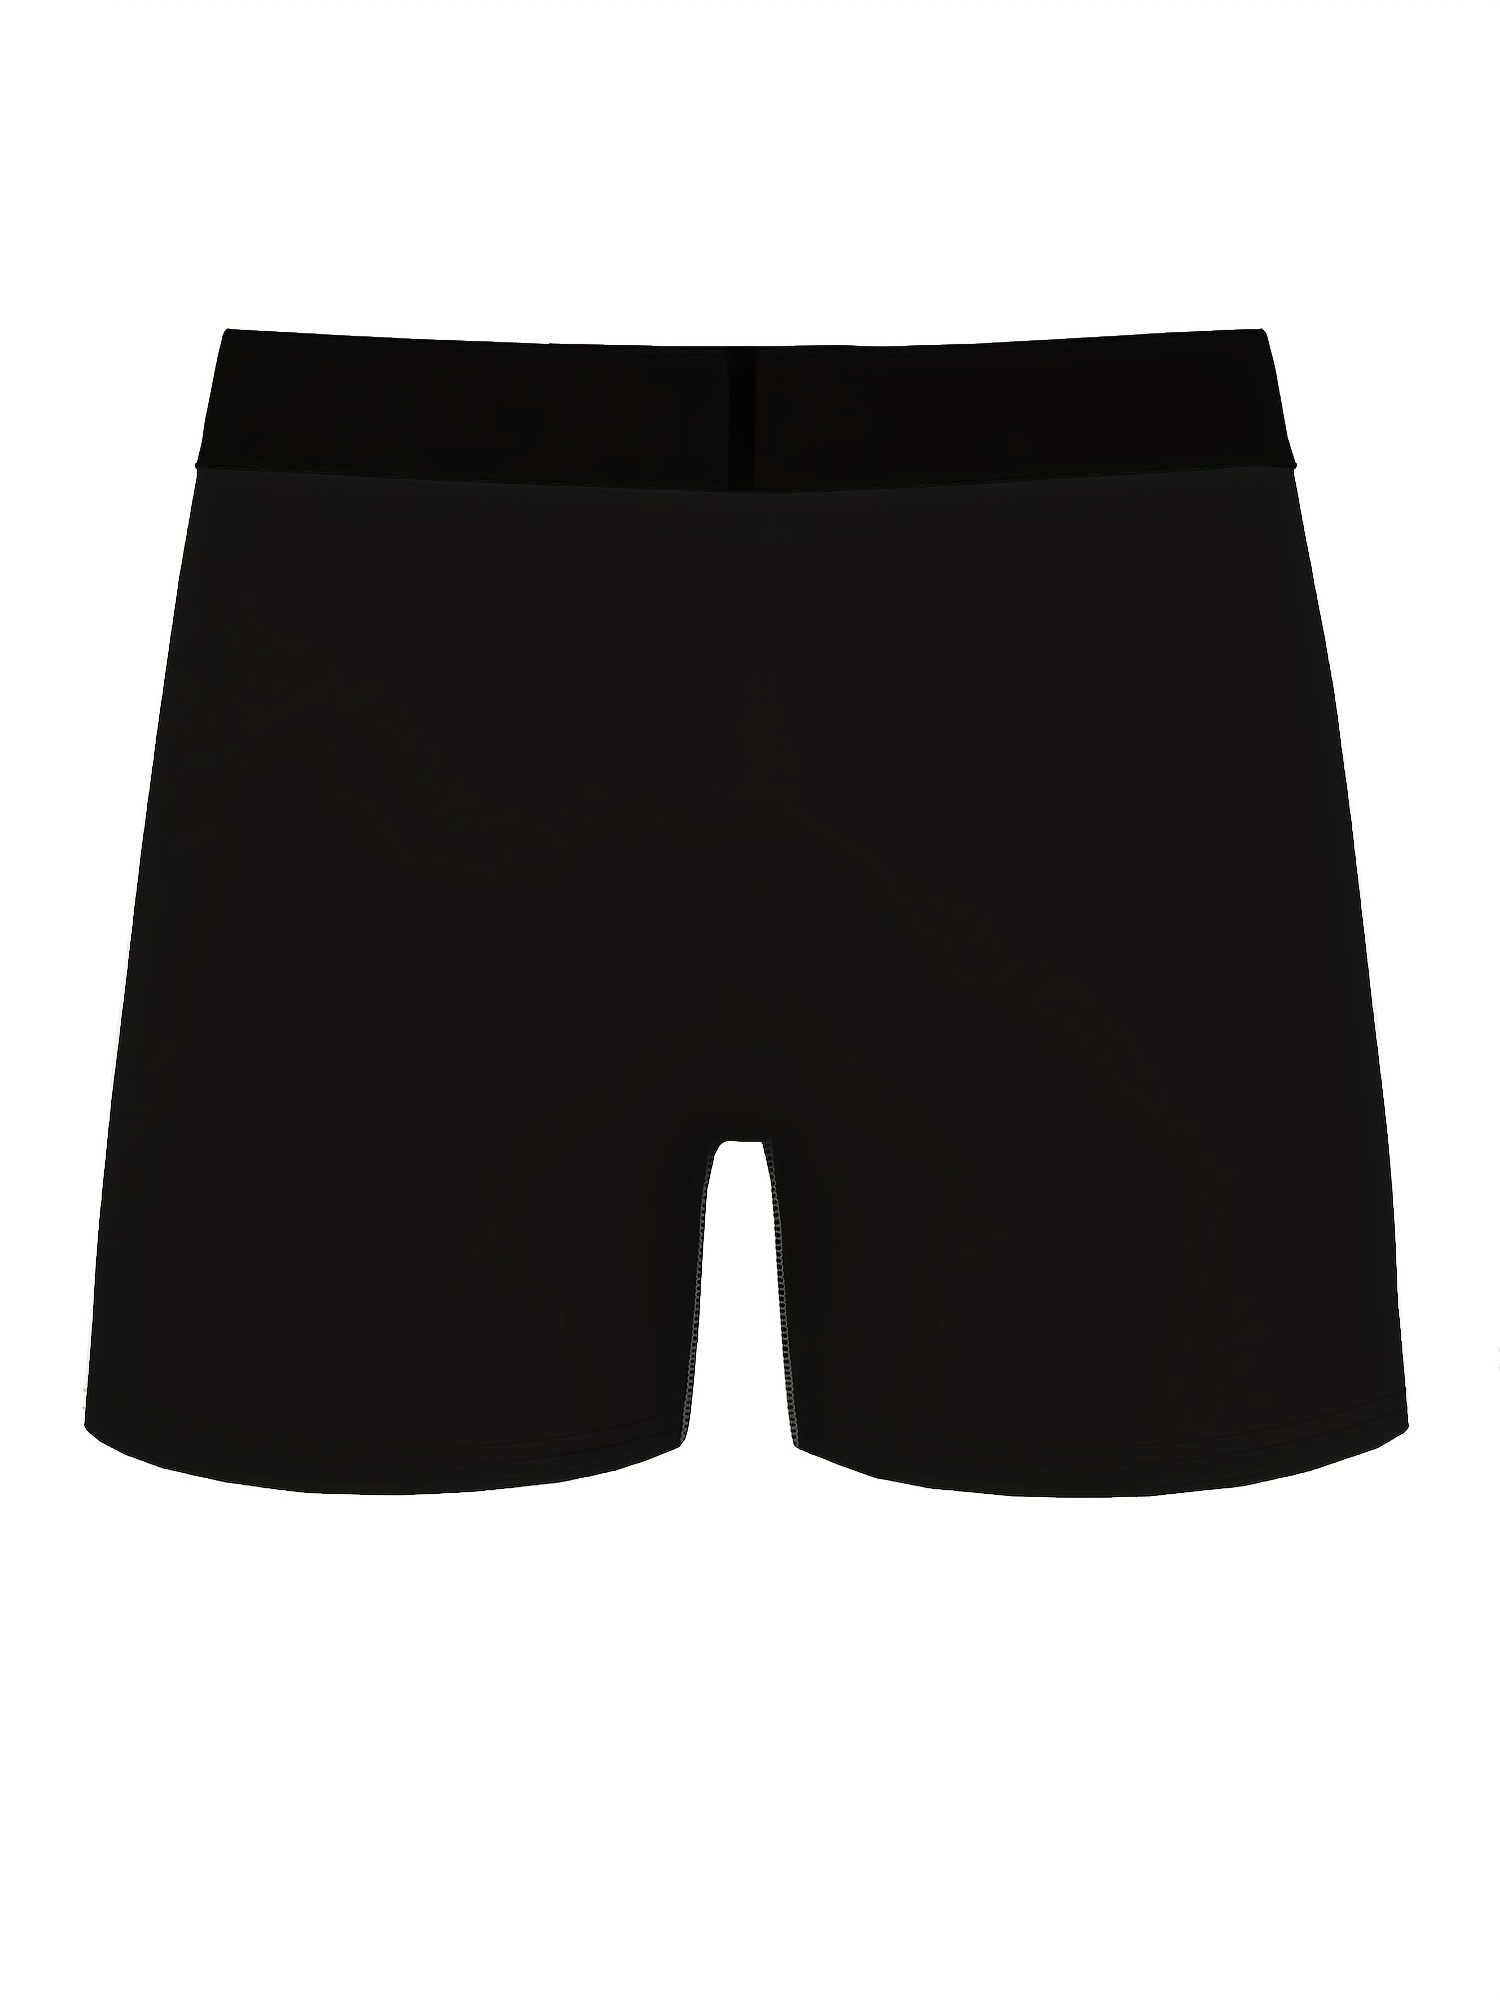 Undiz - The cool underwear brand for men and women